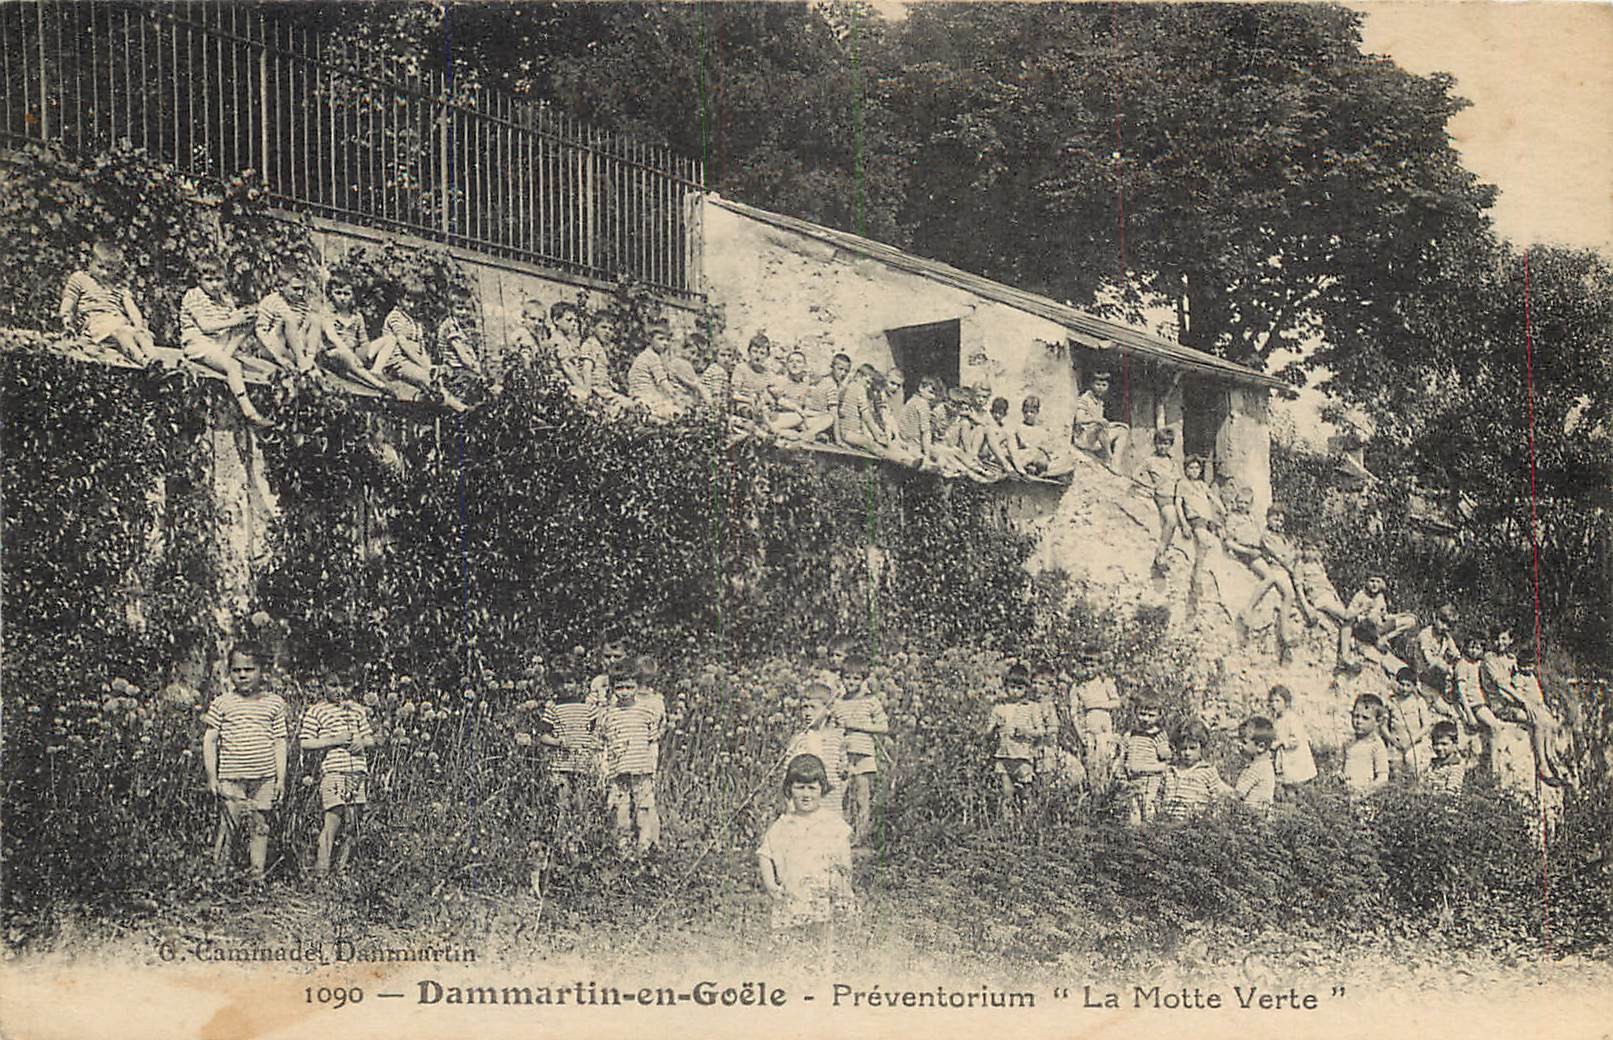 77 DAMMARTIN-EN-GOËLE. Enfants au Préventorium " La Motte Verte "